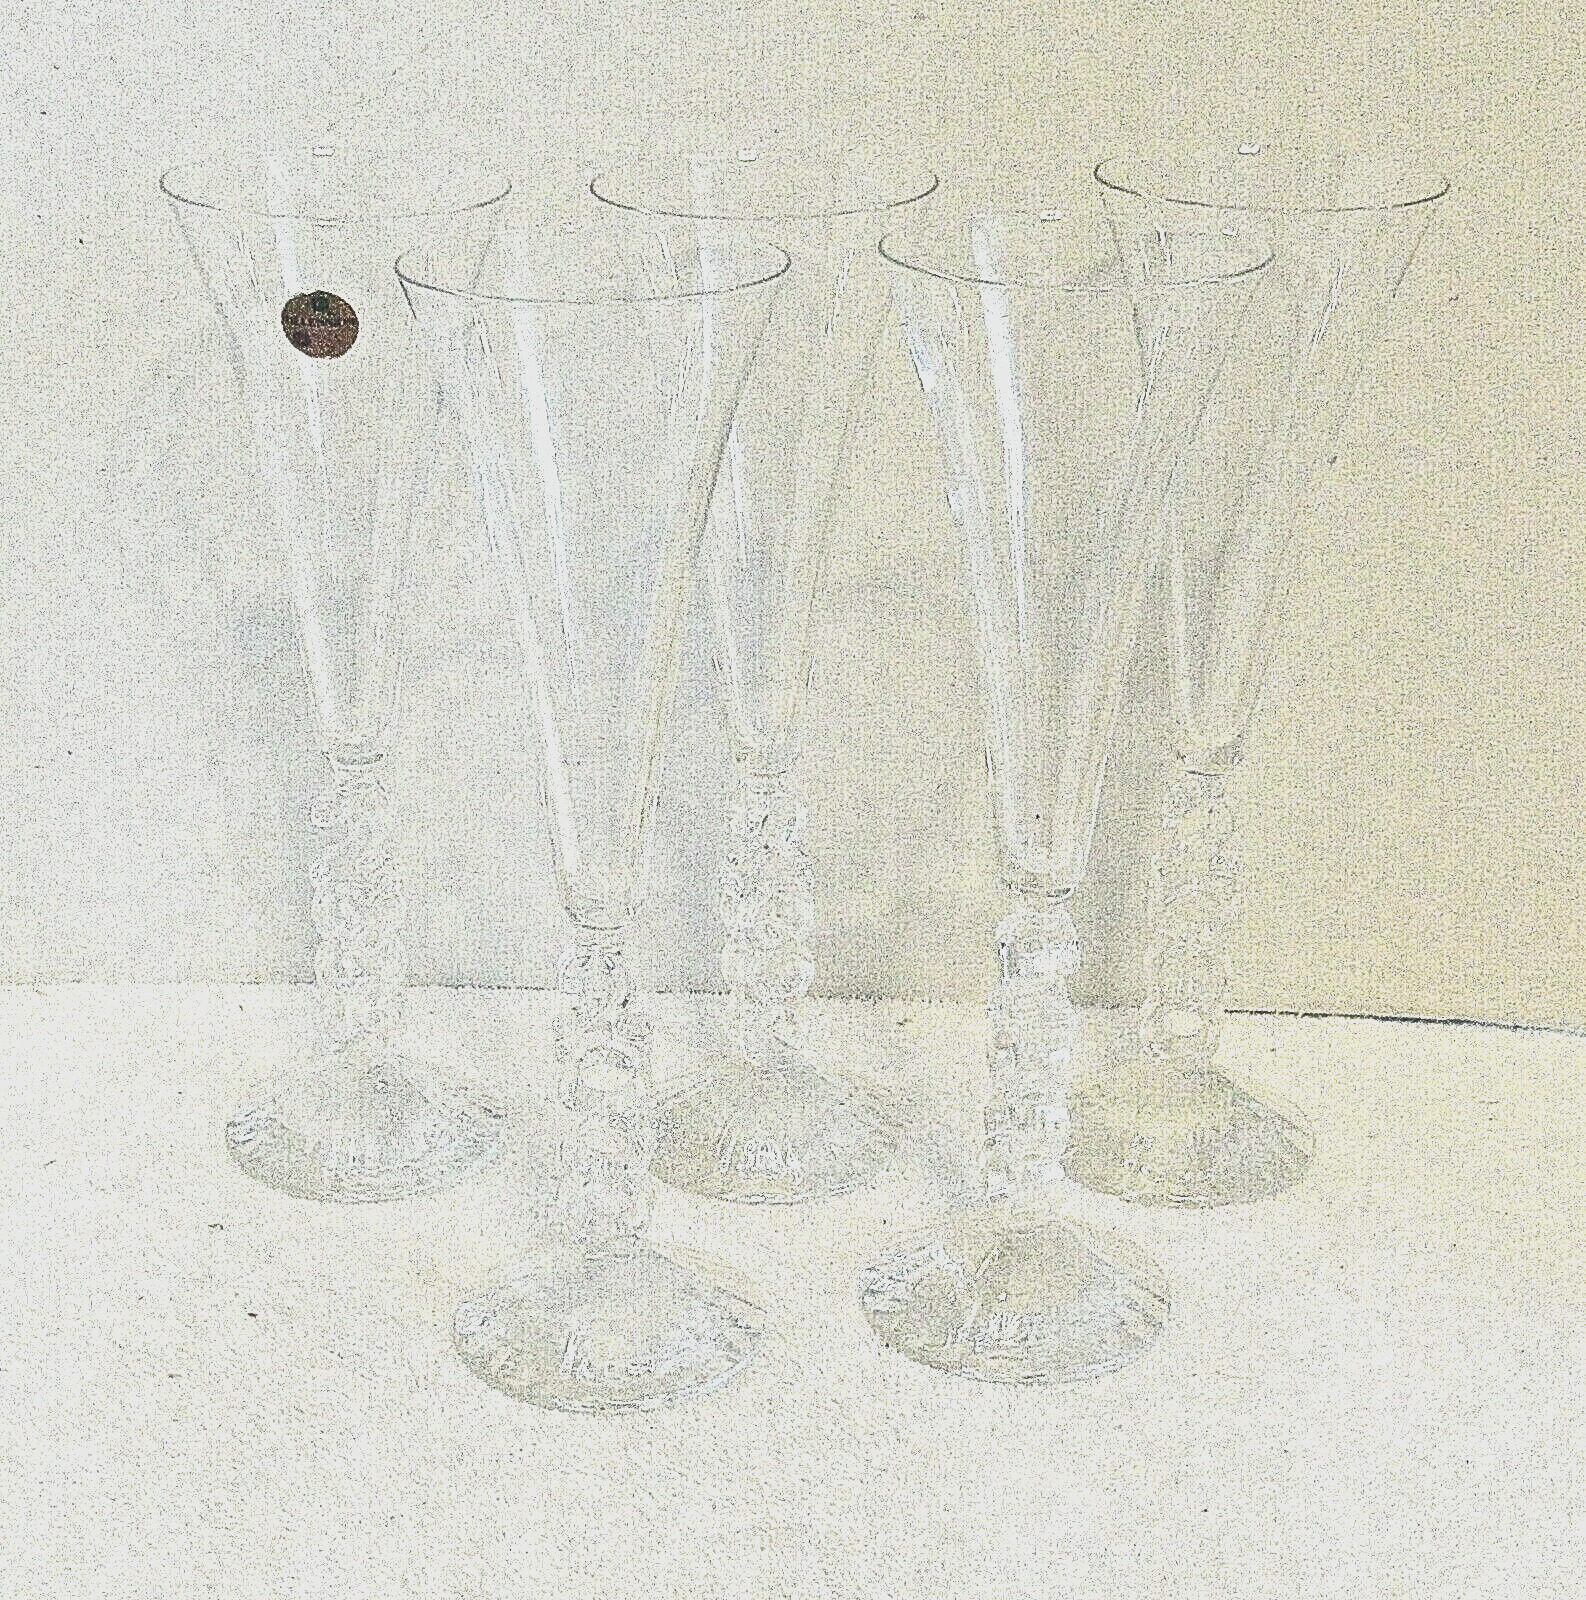 4 Vintage Cristal d Arques  10 Inch Stem Liquor Glasses Millennium 2000